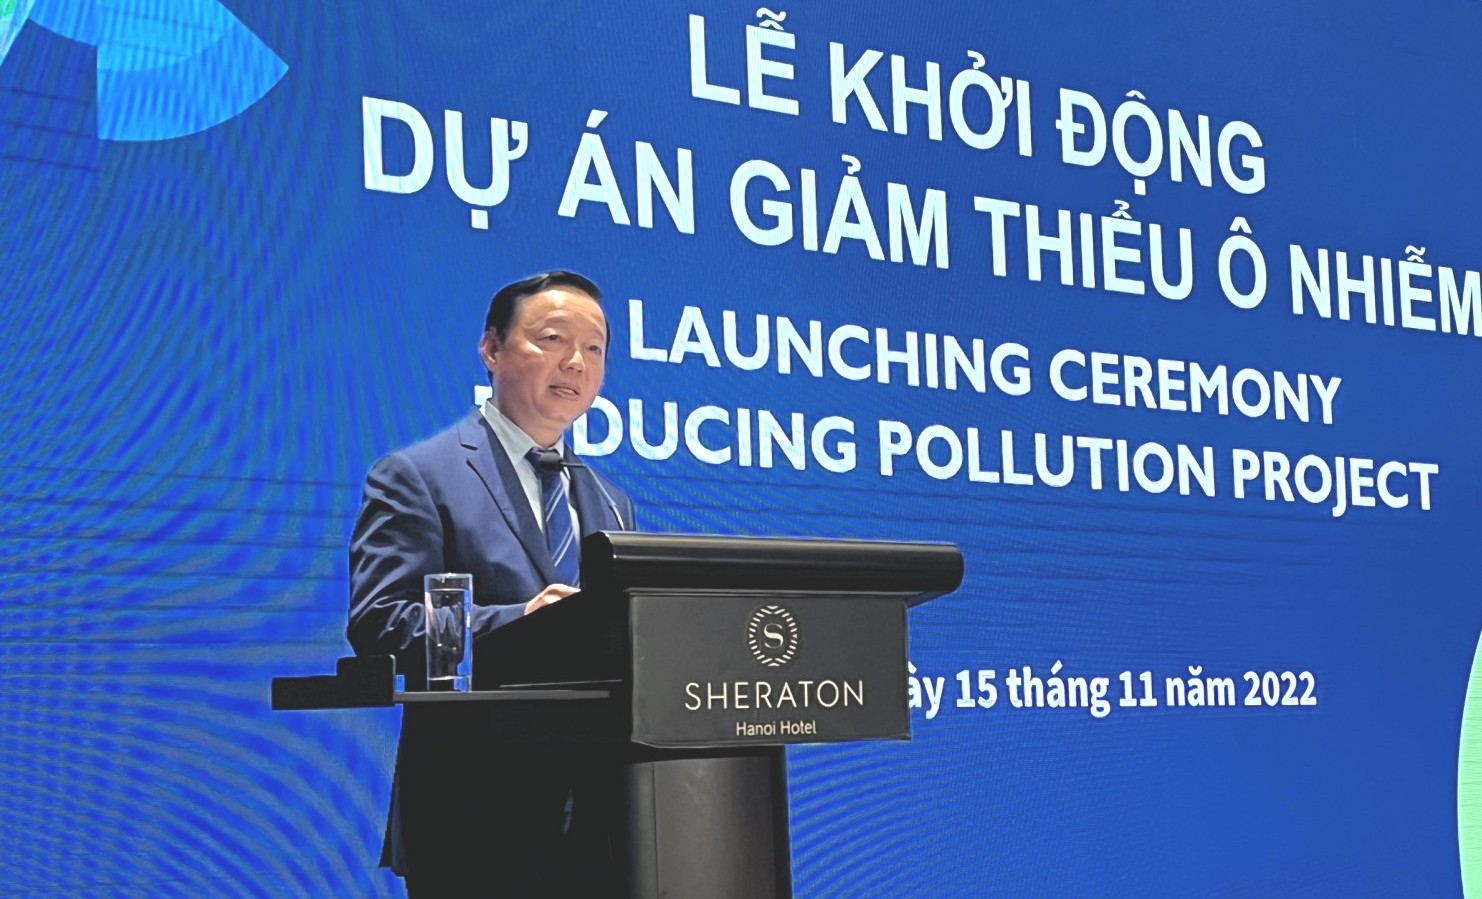 Hơn 11 triệu USD giảm thiểu ô nhiễm tại Việt Nam